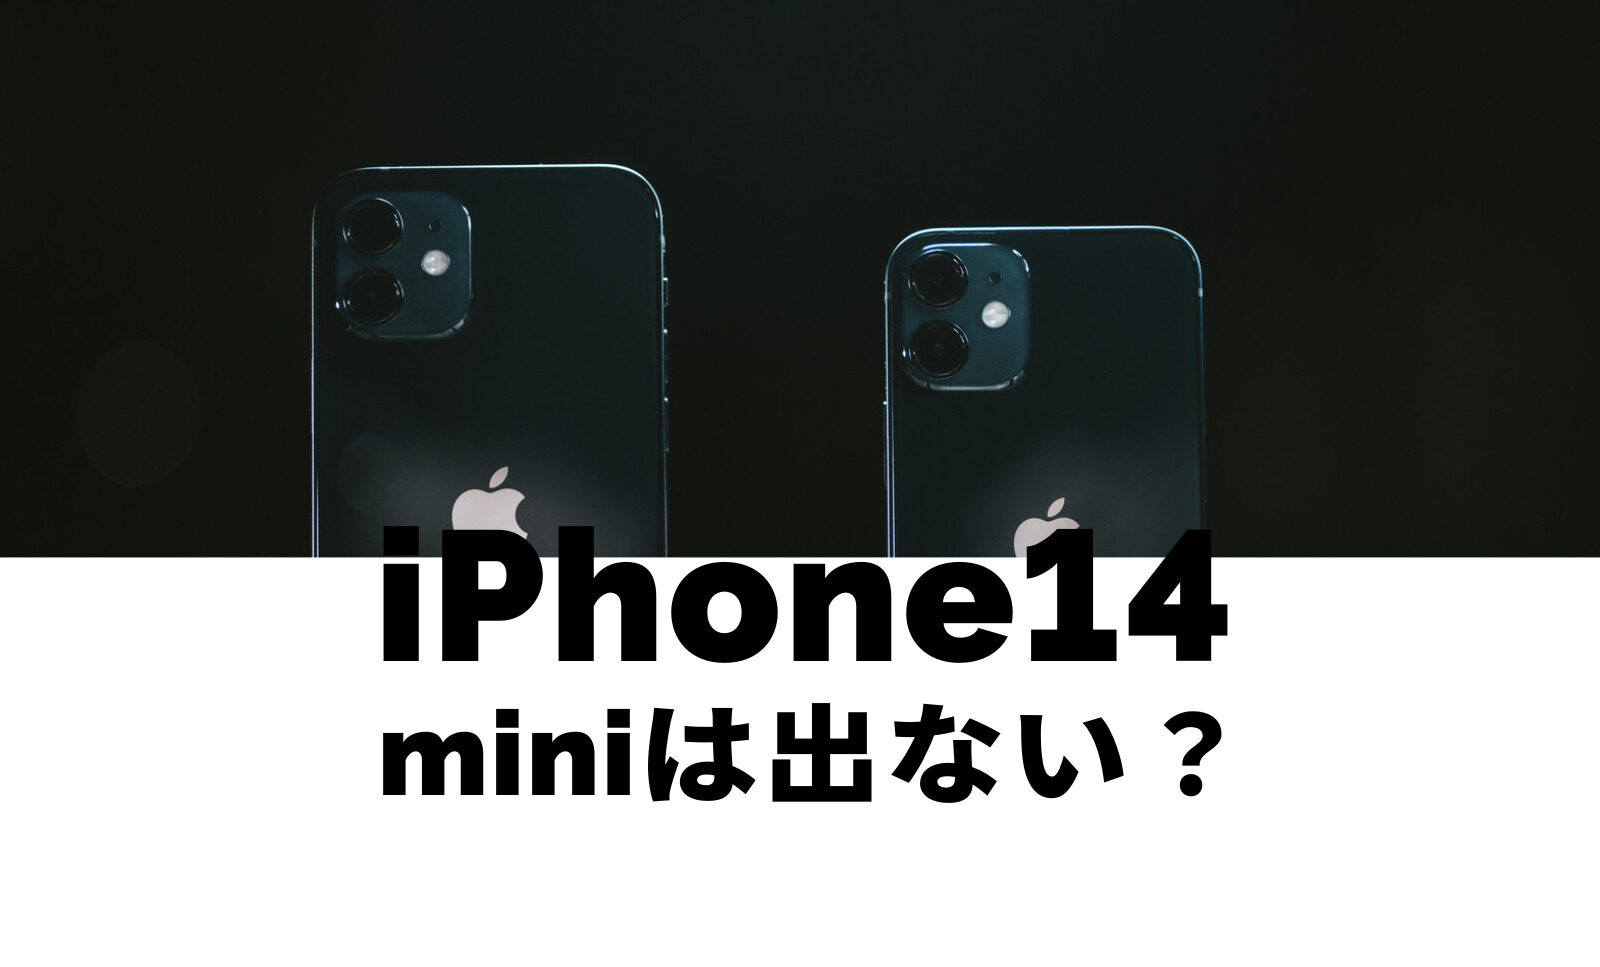 iPhone14 miniは出ない&廃止なのか解説！出る可能性は？のサムネイル画像